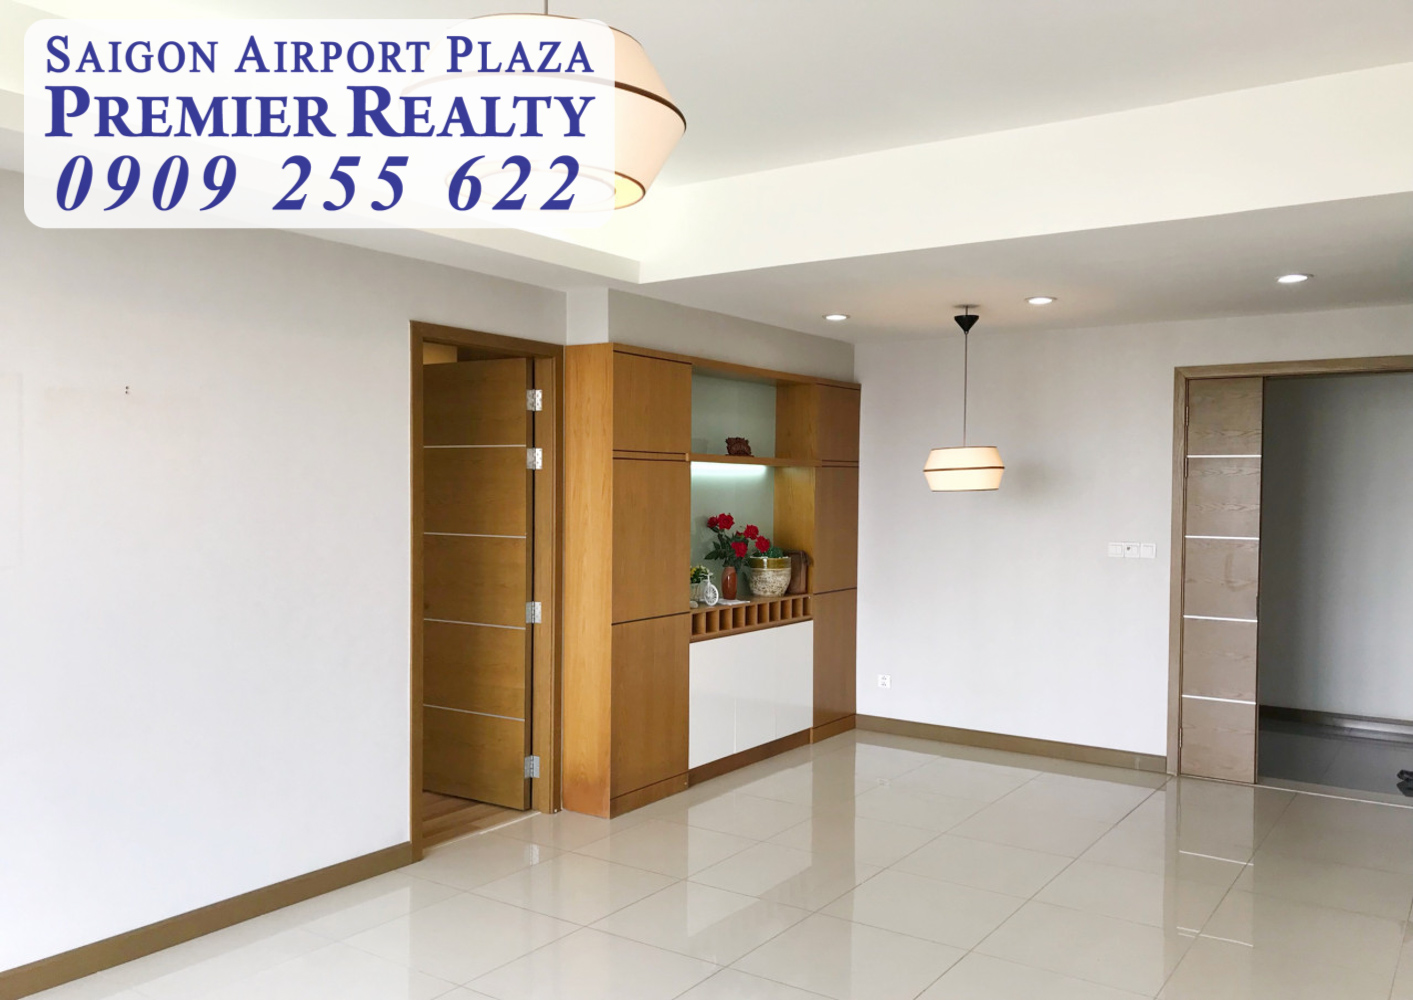 Saigon Airport Plaza Q.Tân Bình_Cho thuê gấp Căn hộ chung cư 3PN - 125m2, tầng trung. Hotline PKD 0909 255 622 xem nhà ngay